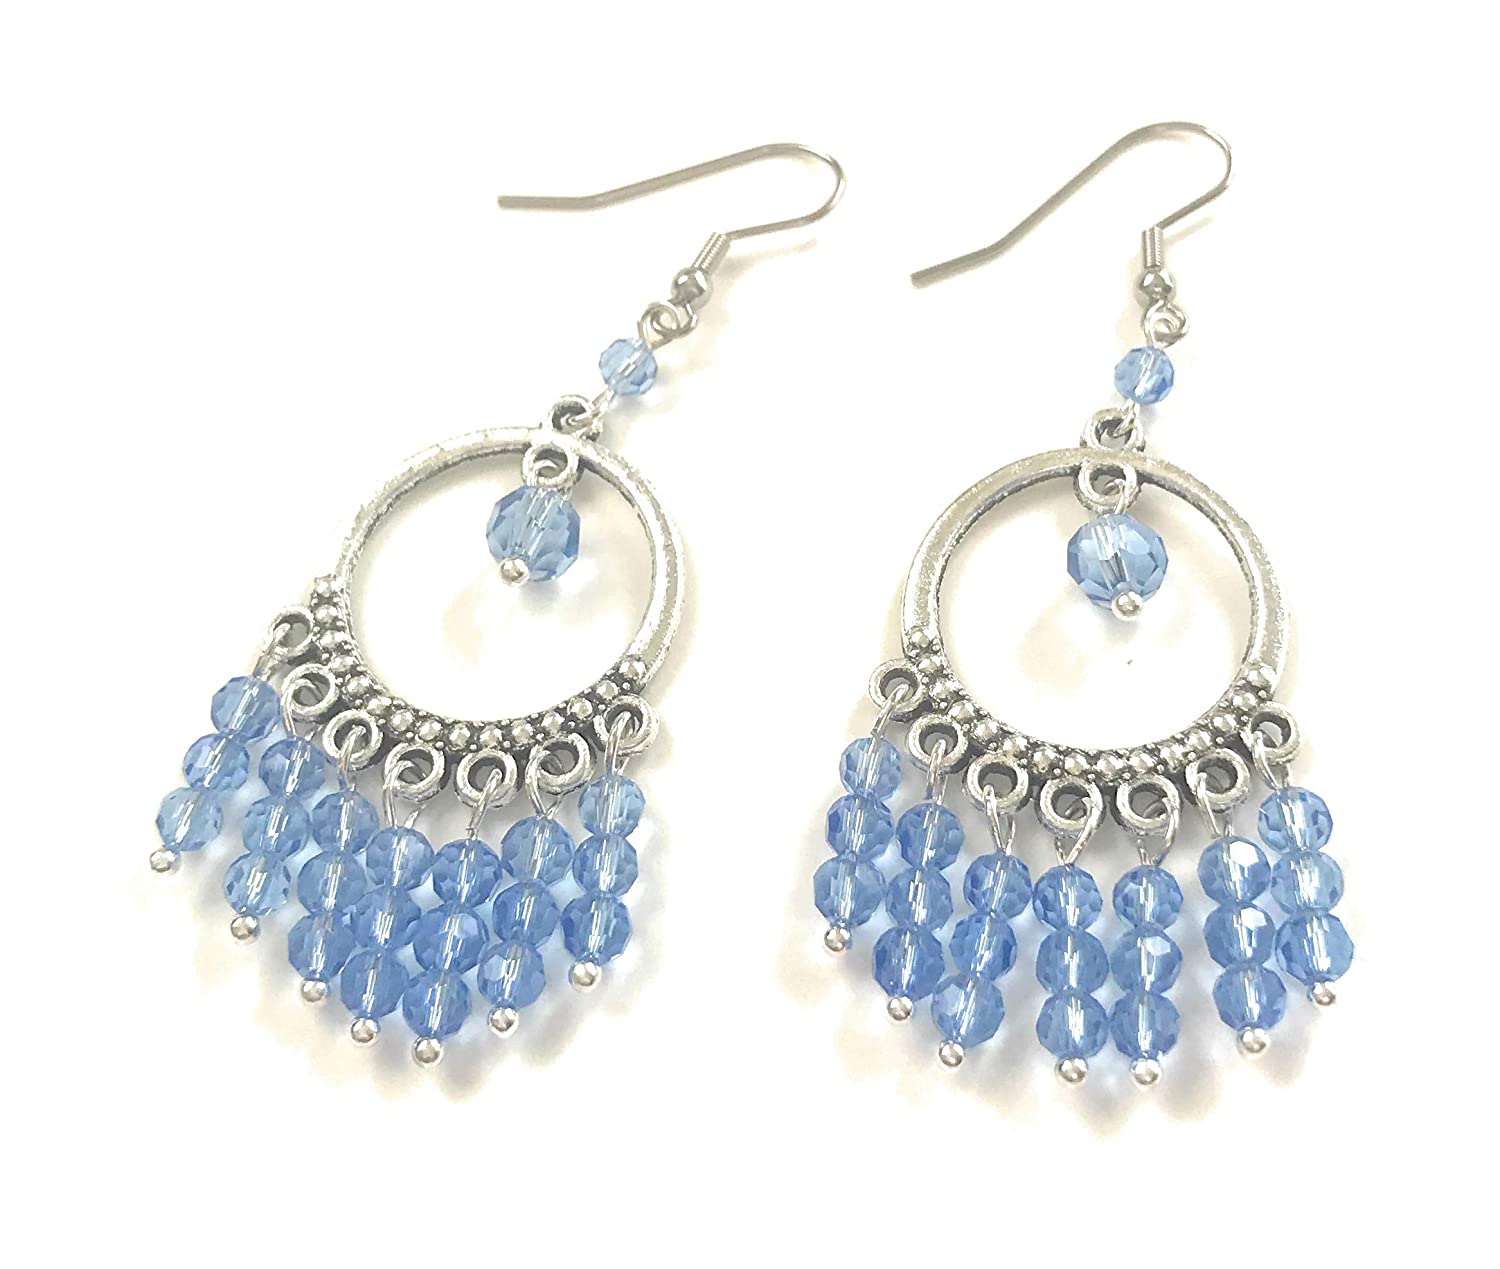 Sky Blue Beaded Chandelier Earrings Side by Side View from Scott D Jewelry Designs